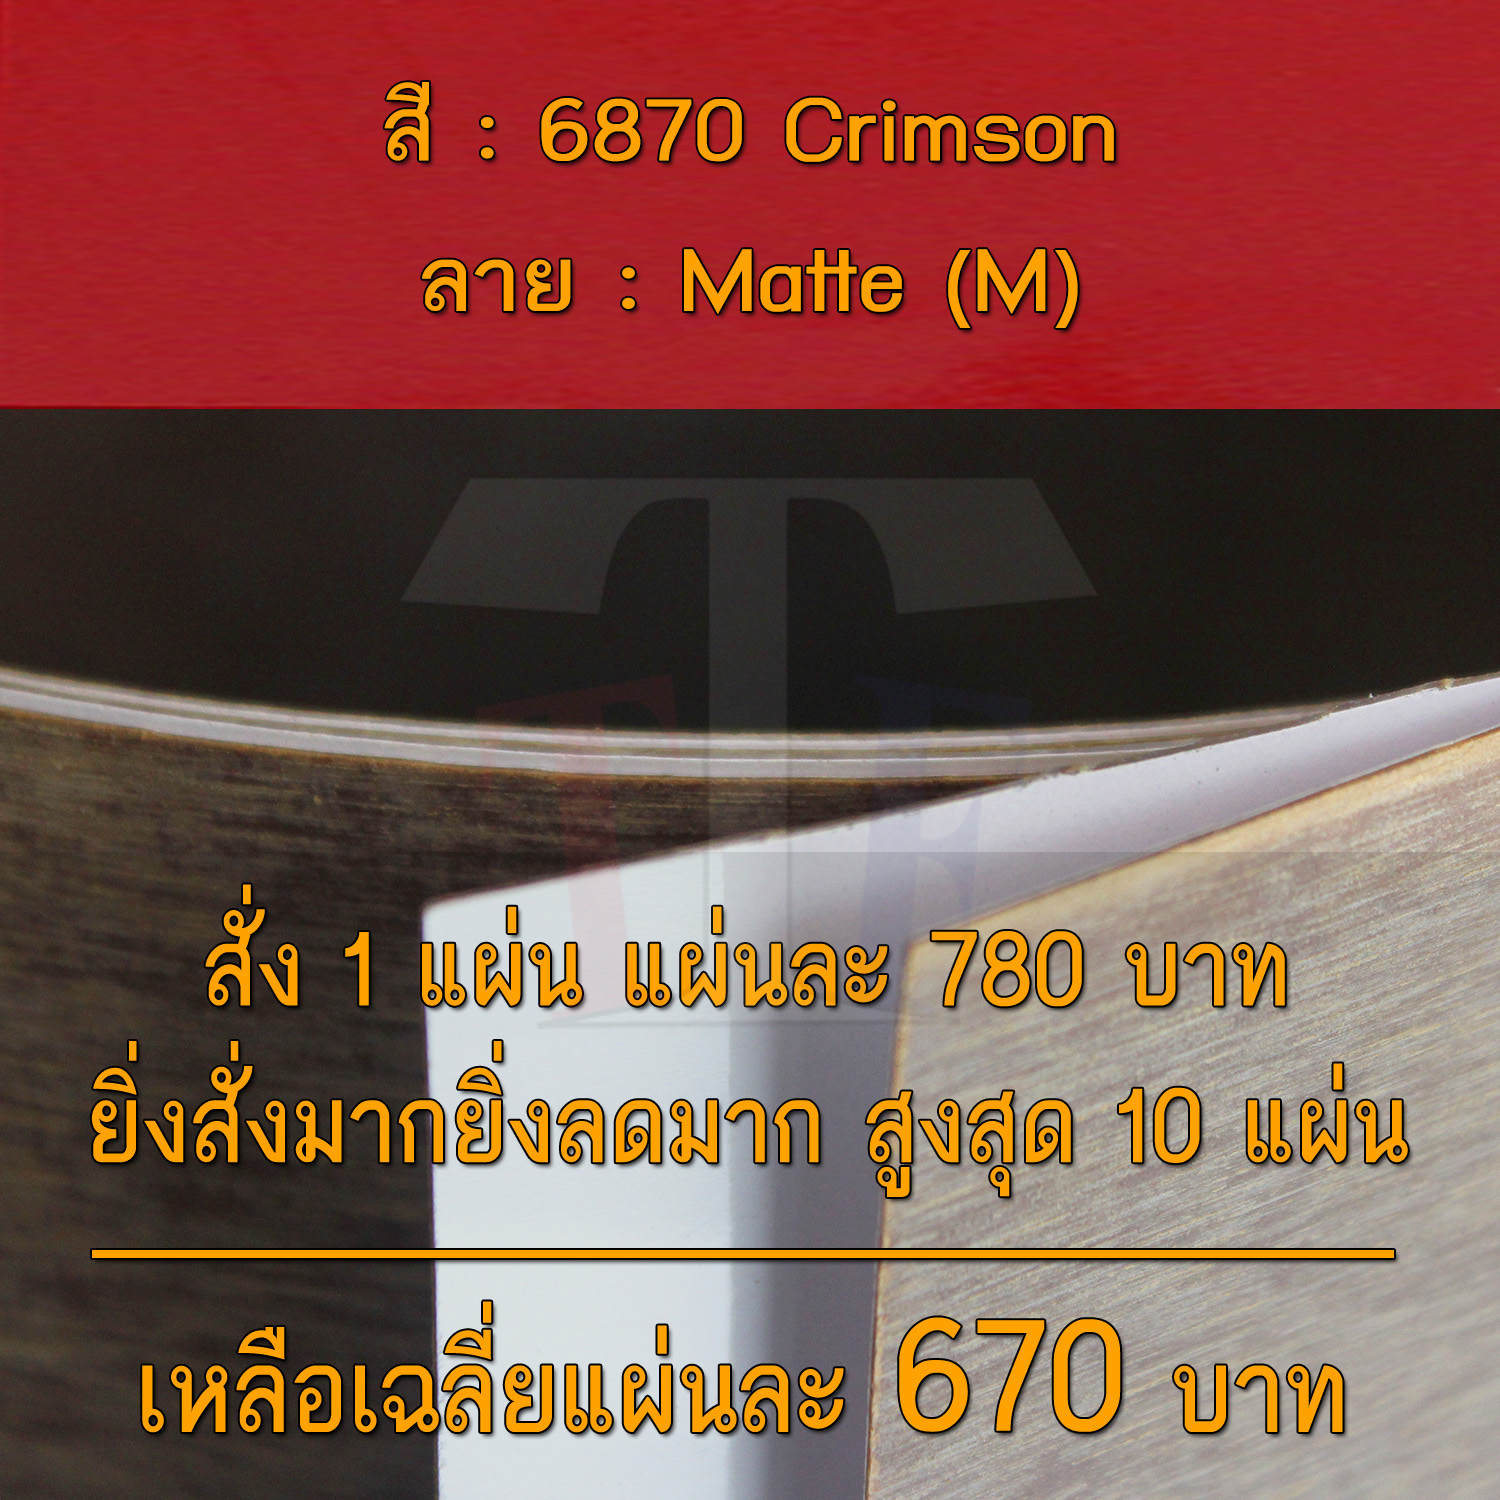 แผ่นโฟเมก้า แผ่นลามิเนต ยี่ห้อ TD Board สีแดง รหัส 6870 Crimson พื้นผิวลาย Matte (M) ขนาด 1220 x 2440 มม. หนา 0.70 มม. ใช้สำหรับงานตกแต่งภายใน งานปิดผิวเฟอร์นิเจอร์ ผนัง และอื่นๆ เพื่อเพิ่มความสวยงาม formica laminate 6870M